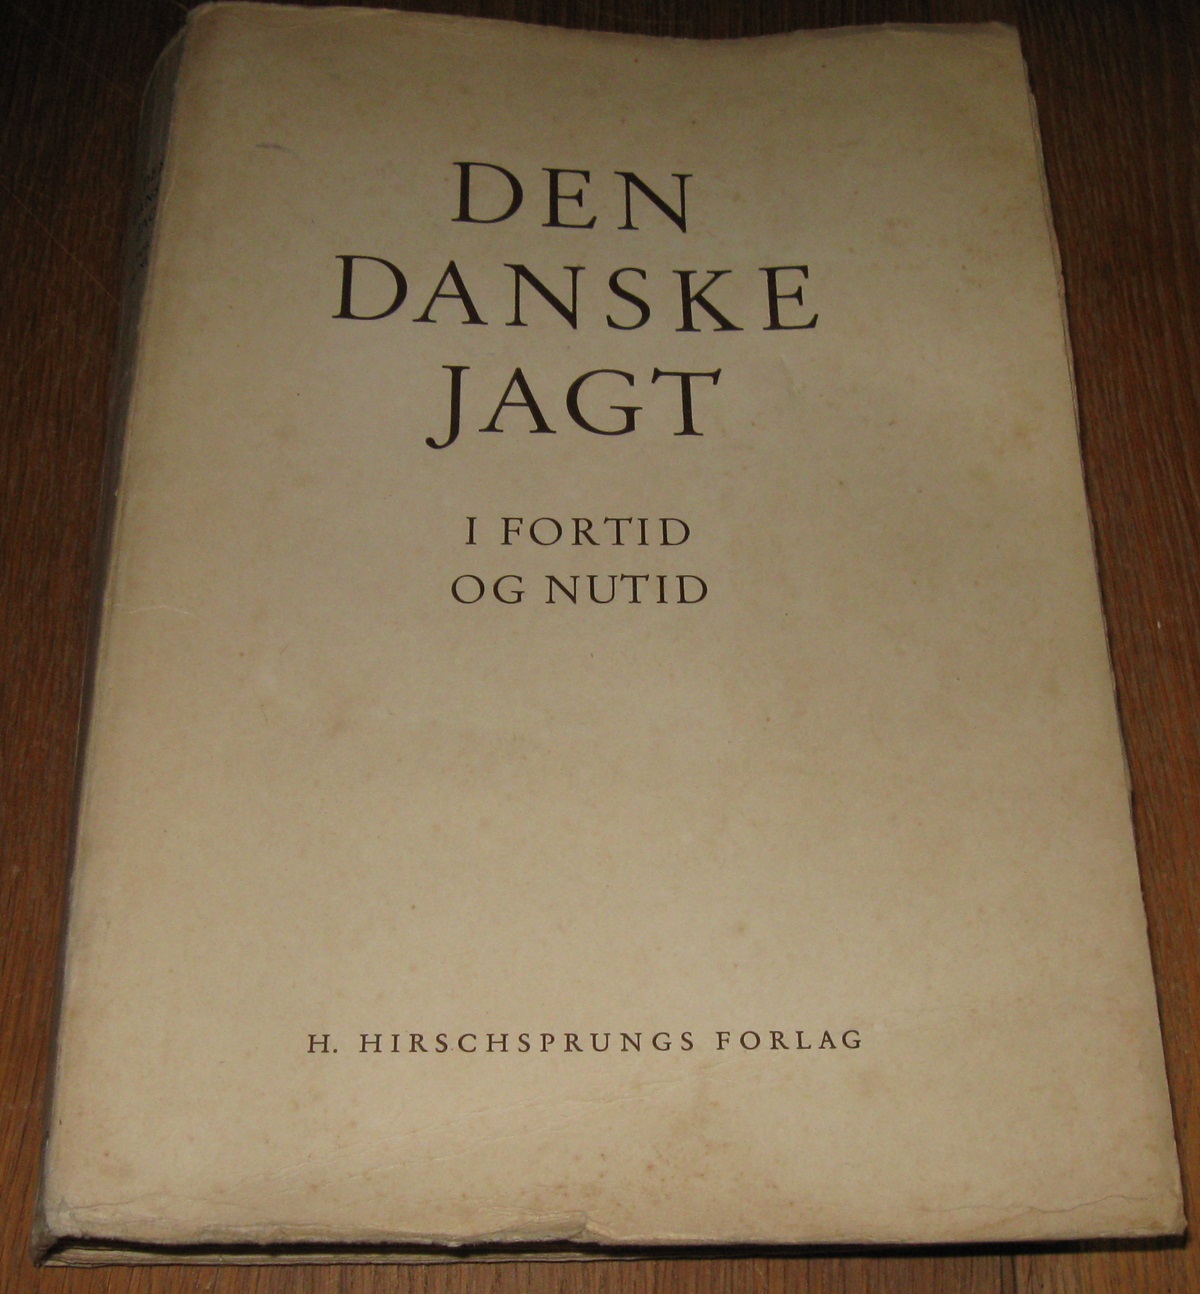 Den danske jagt i fortid og nutid